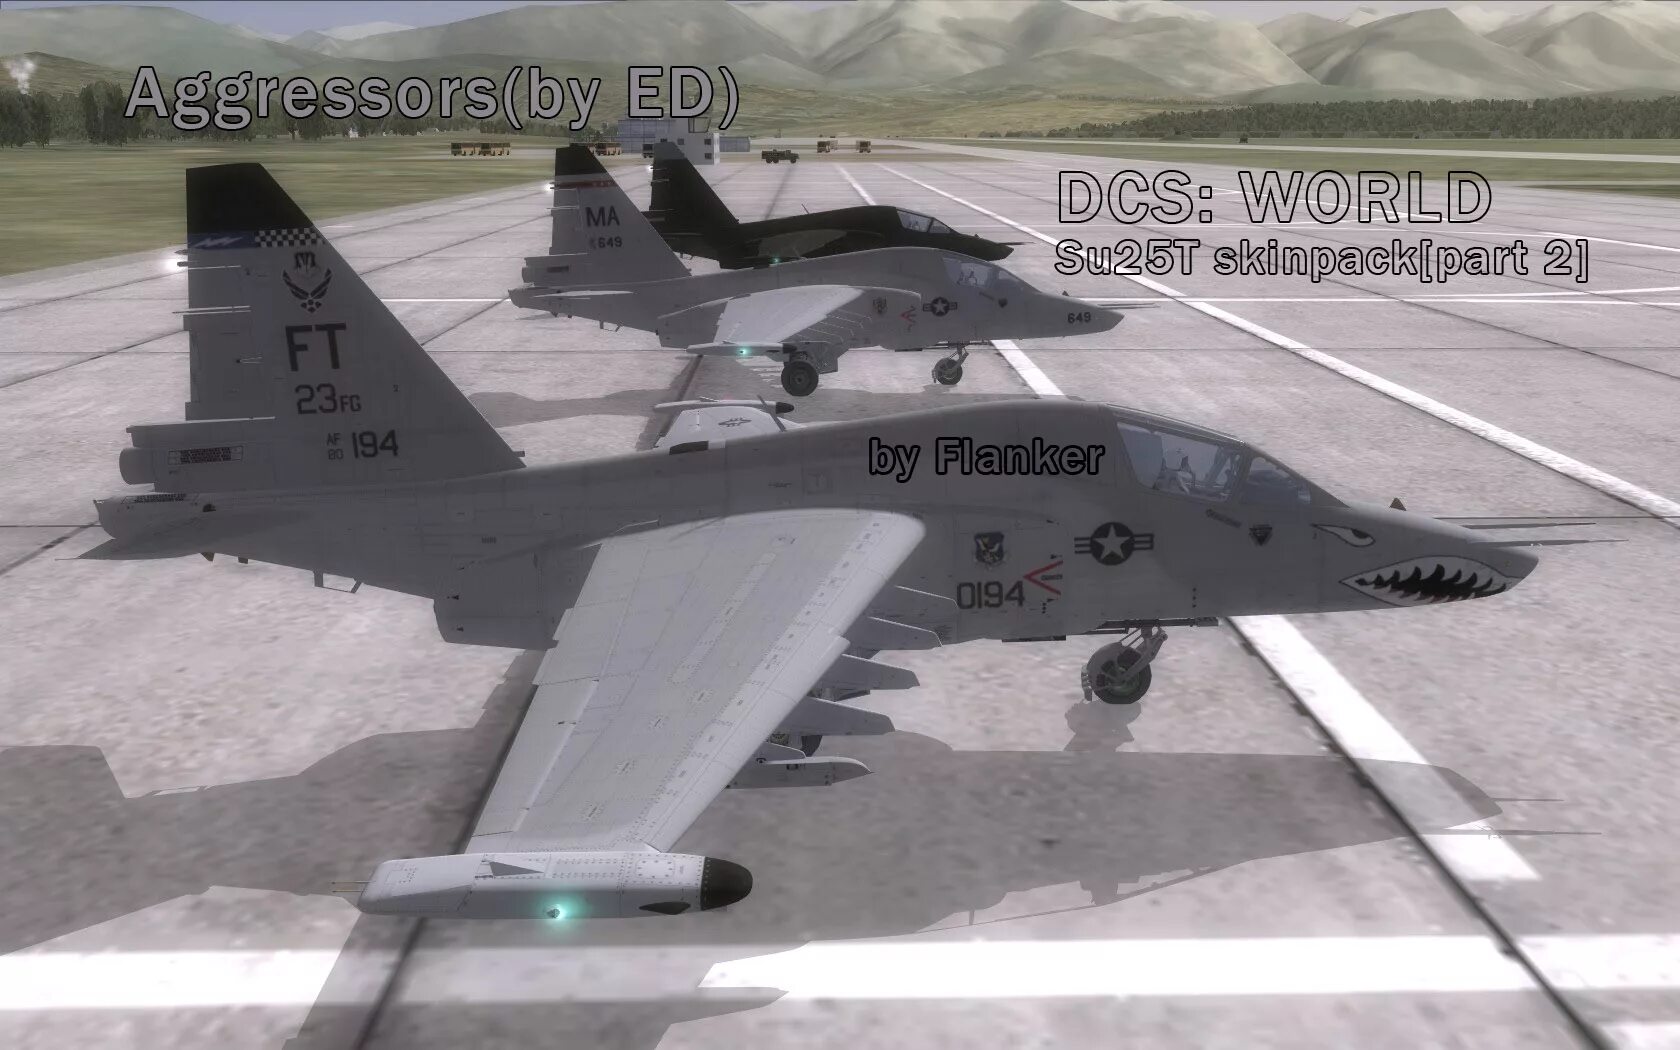 DCS Су-25т вооружение. Су-25т DCS Меркурий. DCS World Су-25т. DCS Су 25.